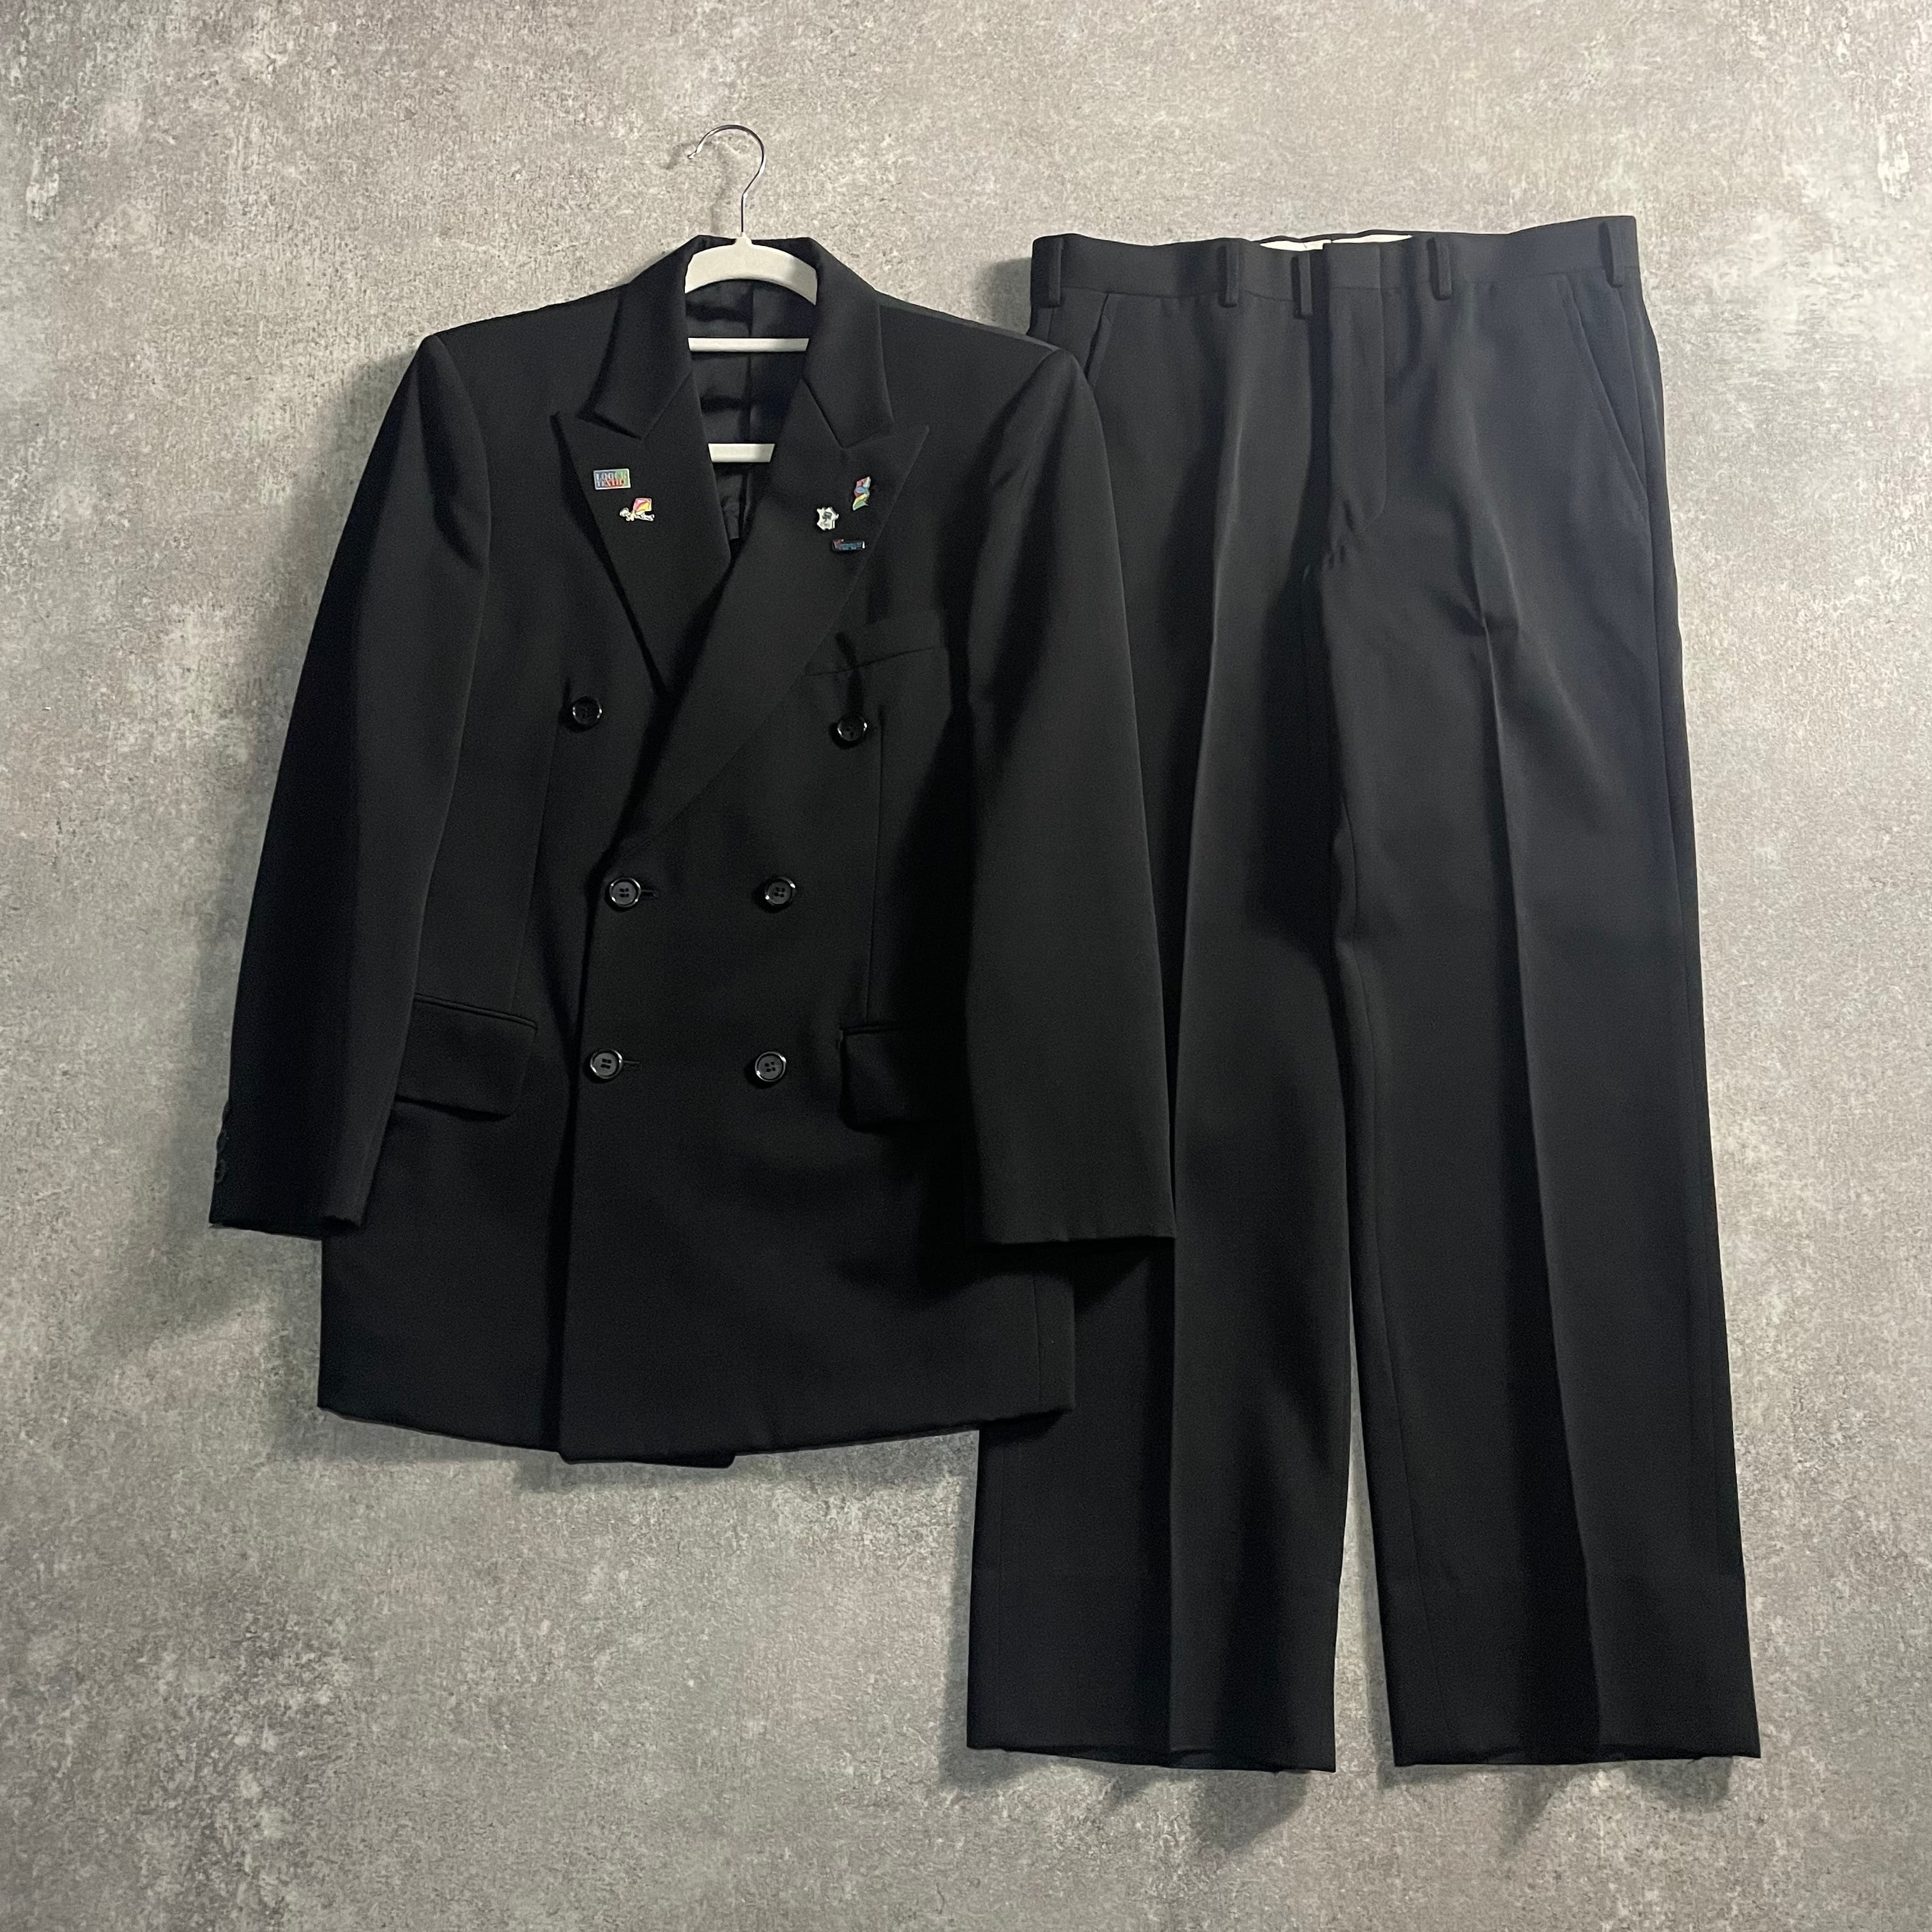 LOST特注【vintage】セットアップ ダブルスーツ ブラック 成人式 